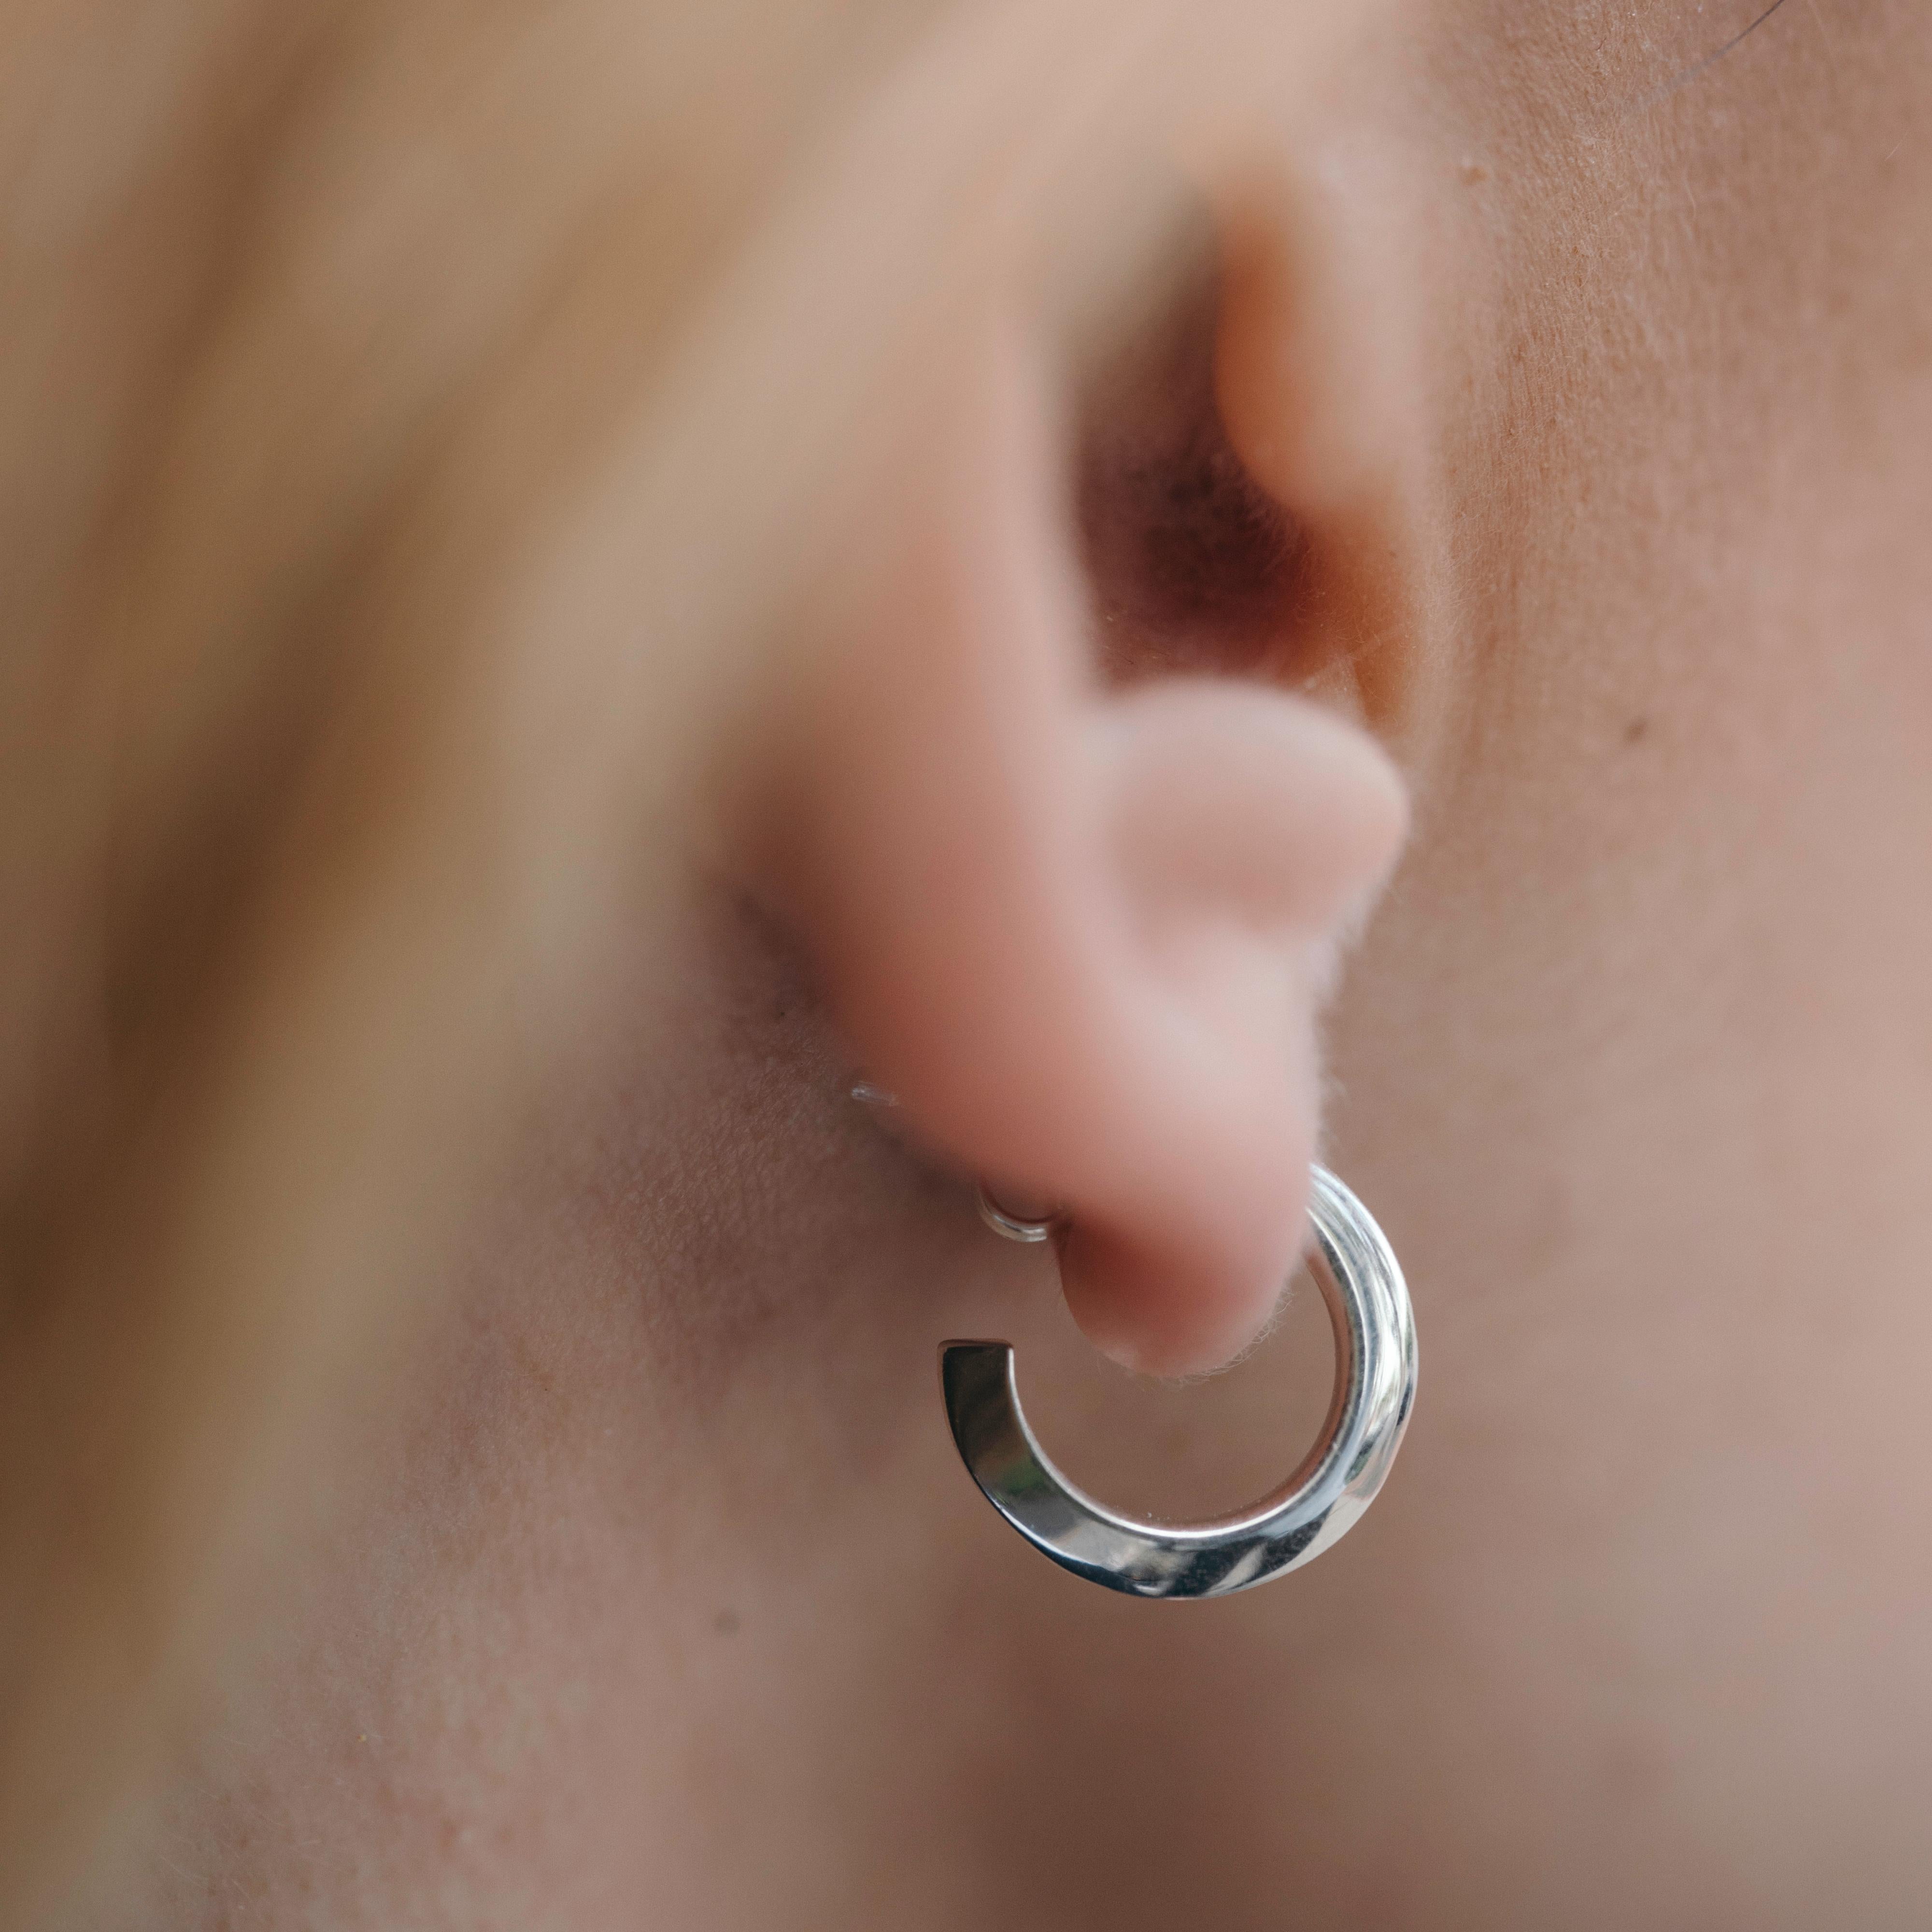 Die Small Flow Hoop-Ohrringe beginnen als Kreis und gehen fließend in ein Dreieck über. Diese Ohrringe sind ein bequemes, alltägliches Statement für jede Gelegenheit und eine zeitlose Neuinterpretation eines Klassikers. Der aus Silber oder